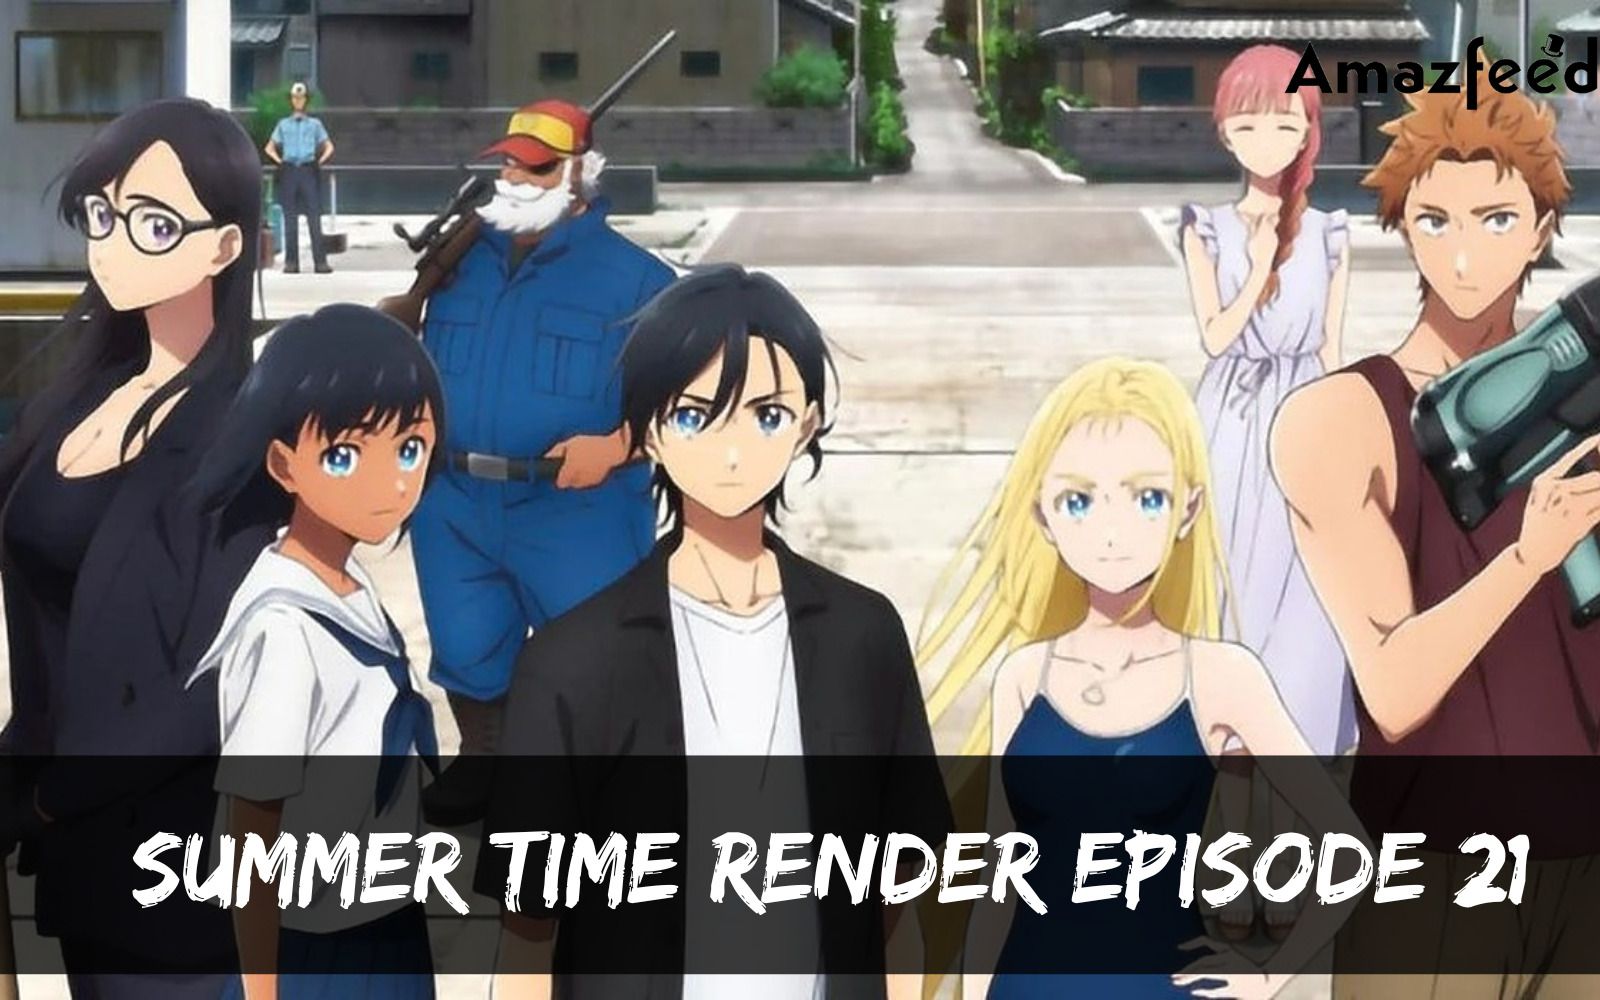 Summer Time Render Episode 21 release date